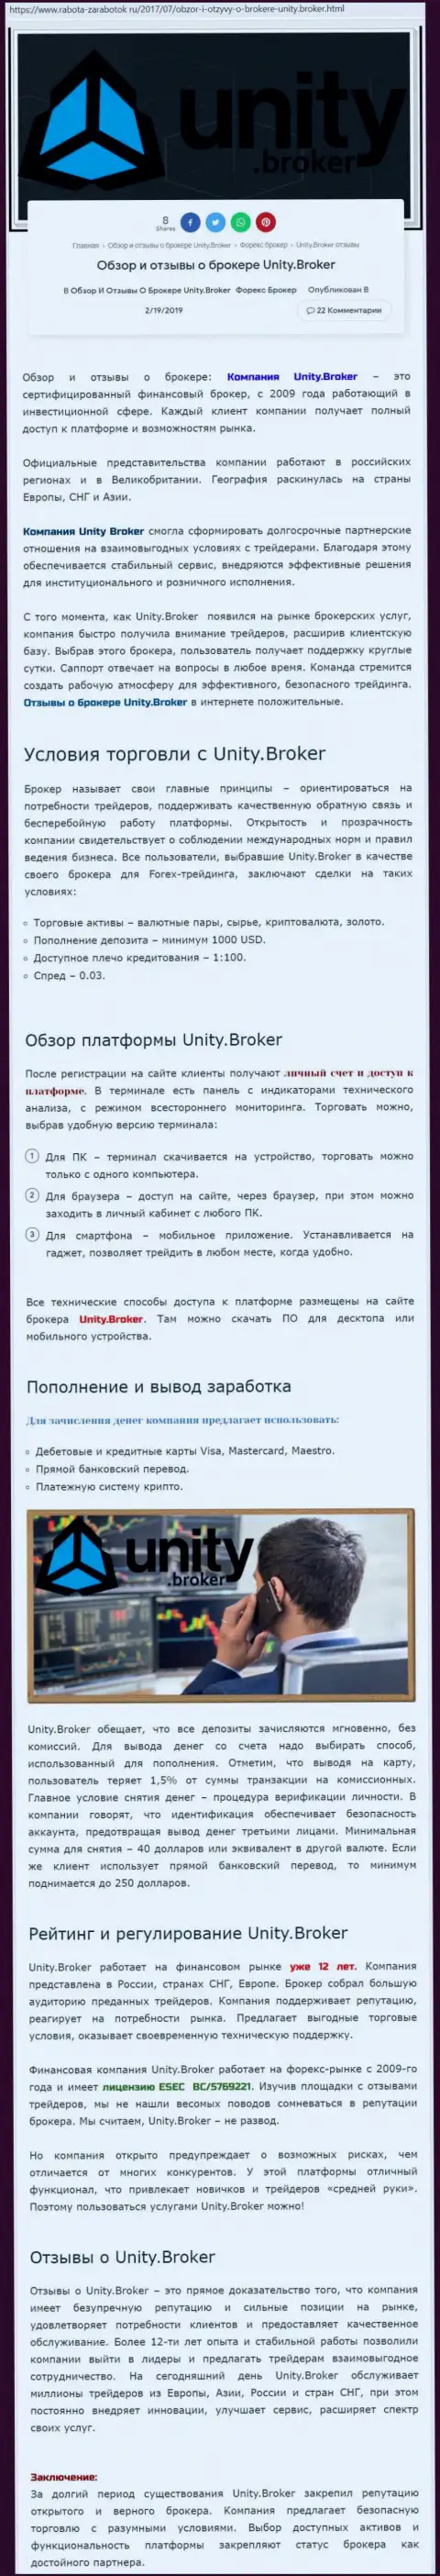 Обзорная информация forex брокерской компании Юнити Брокер на онлайн-сервисе работа-заработок ру